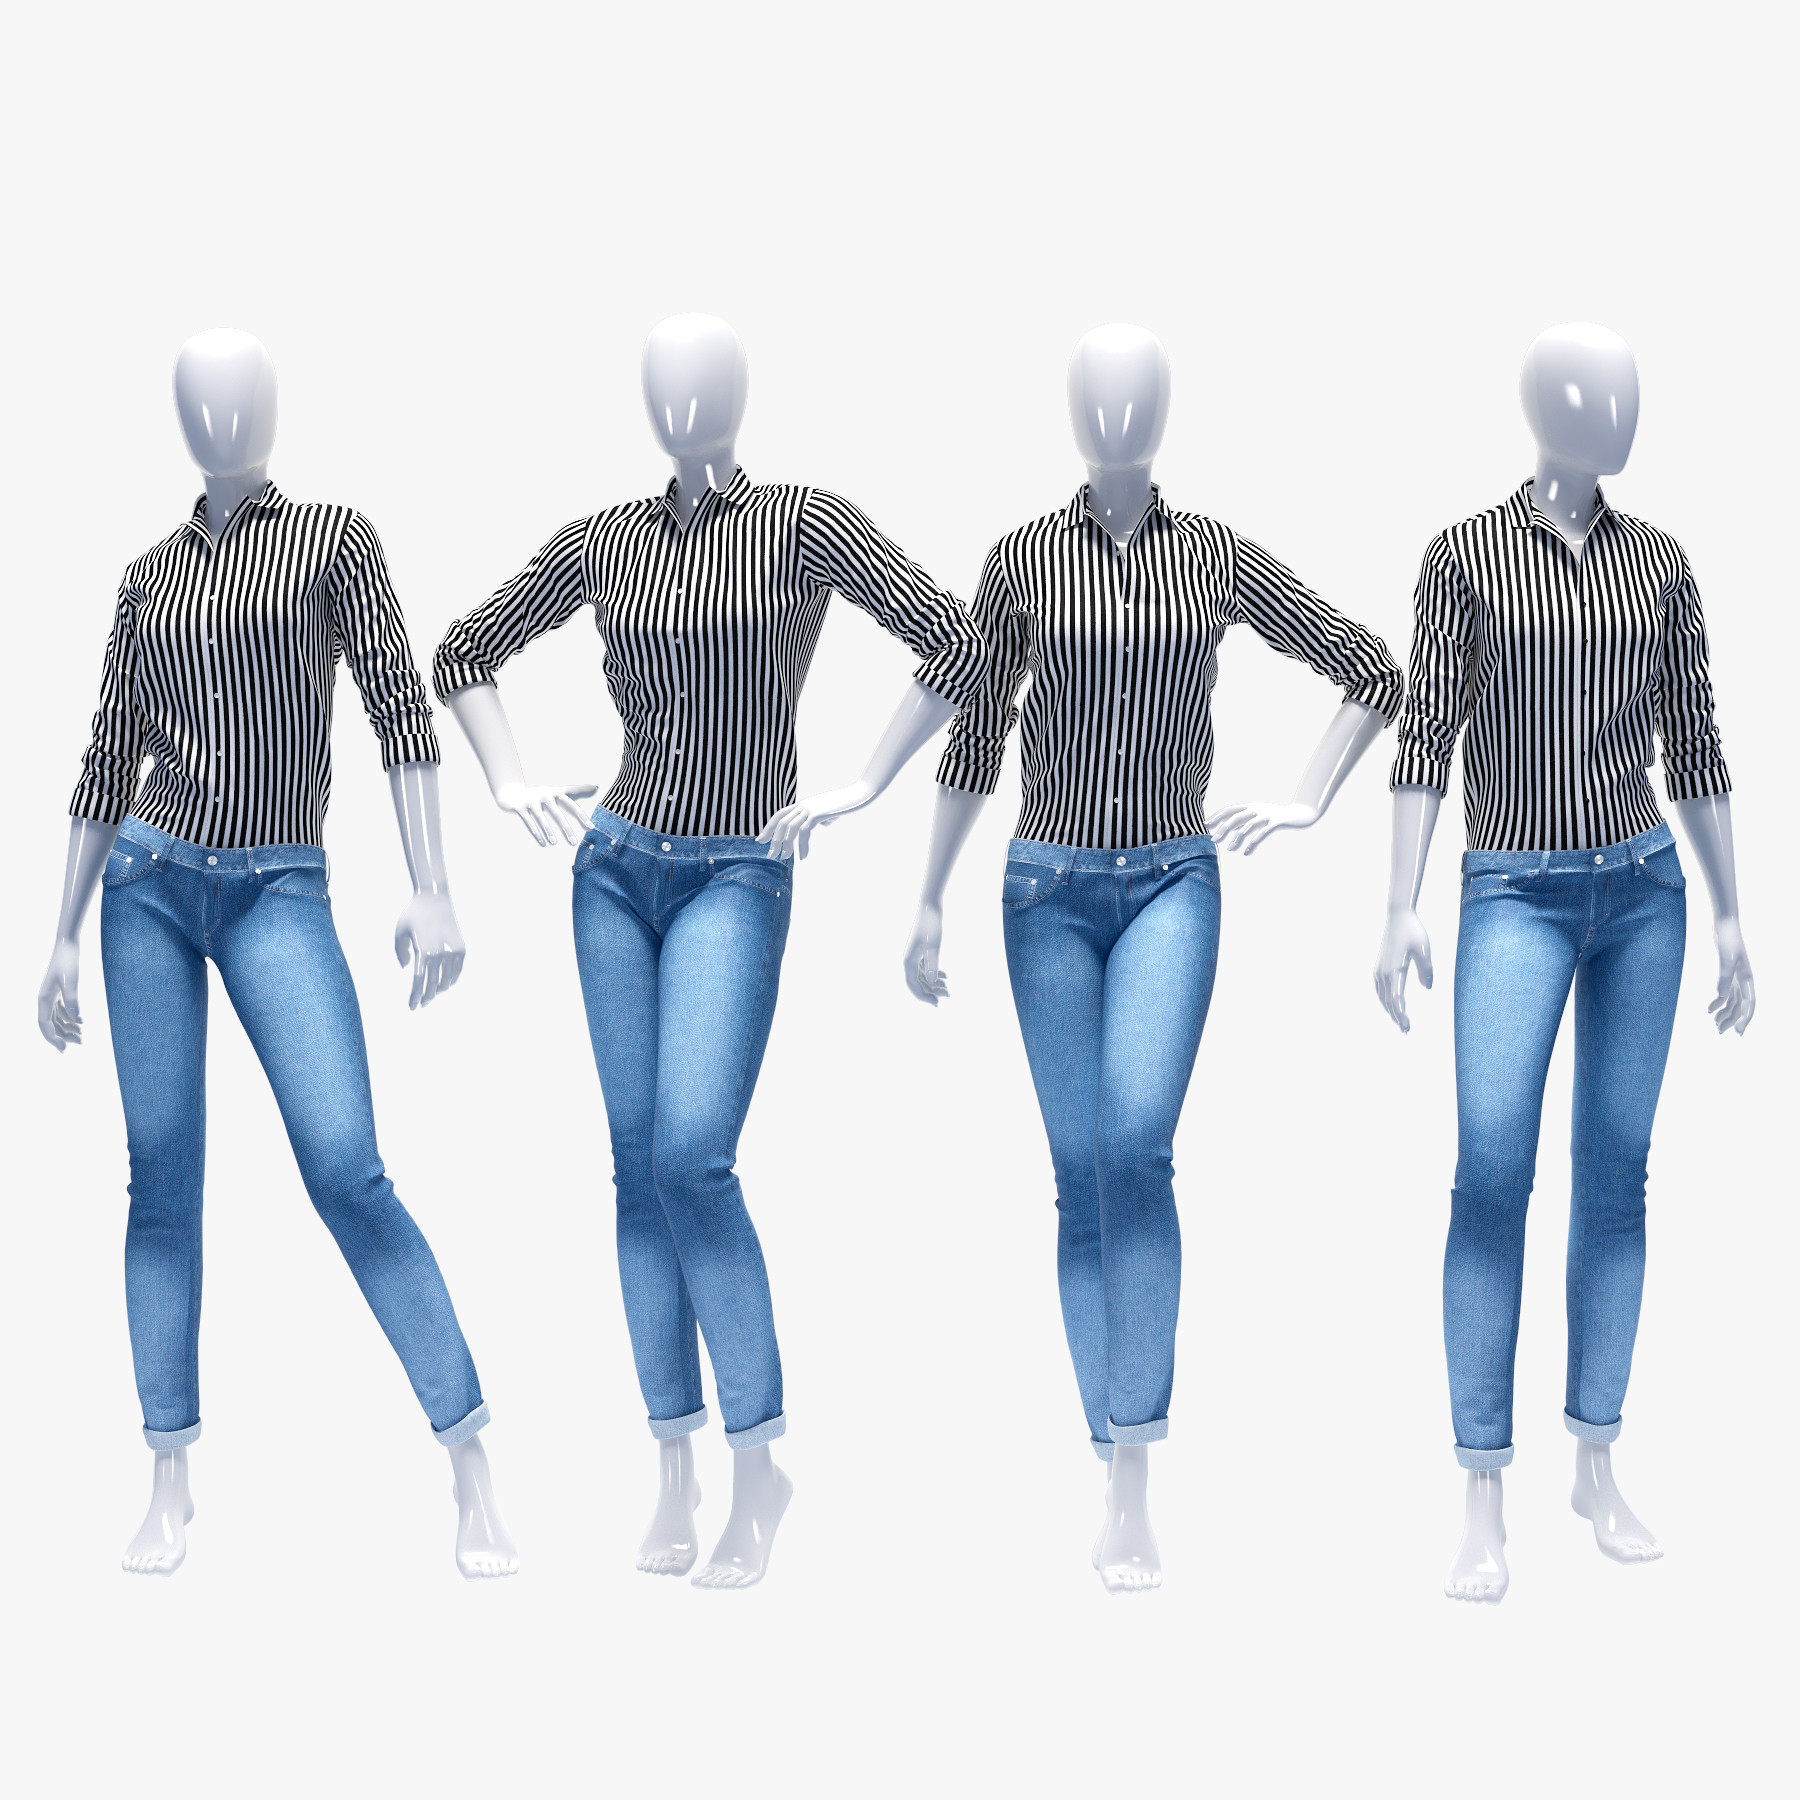 Сайт 3 д моделей. 3d модель одежда. Джинсы 3d model. Трехмерная модель одежды. 3d моделирование джинс.